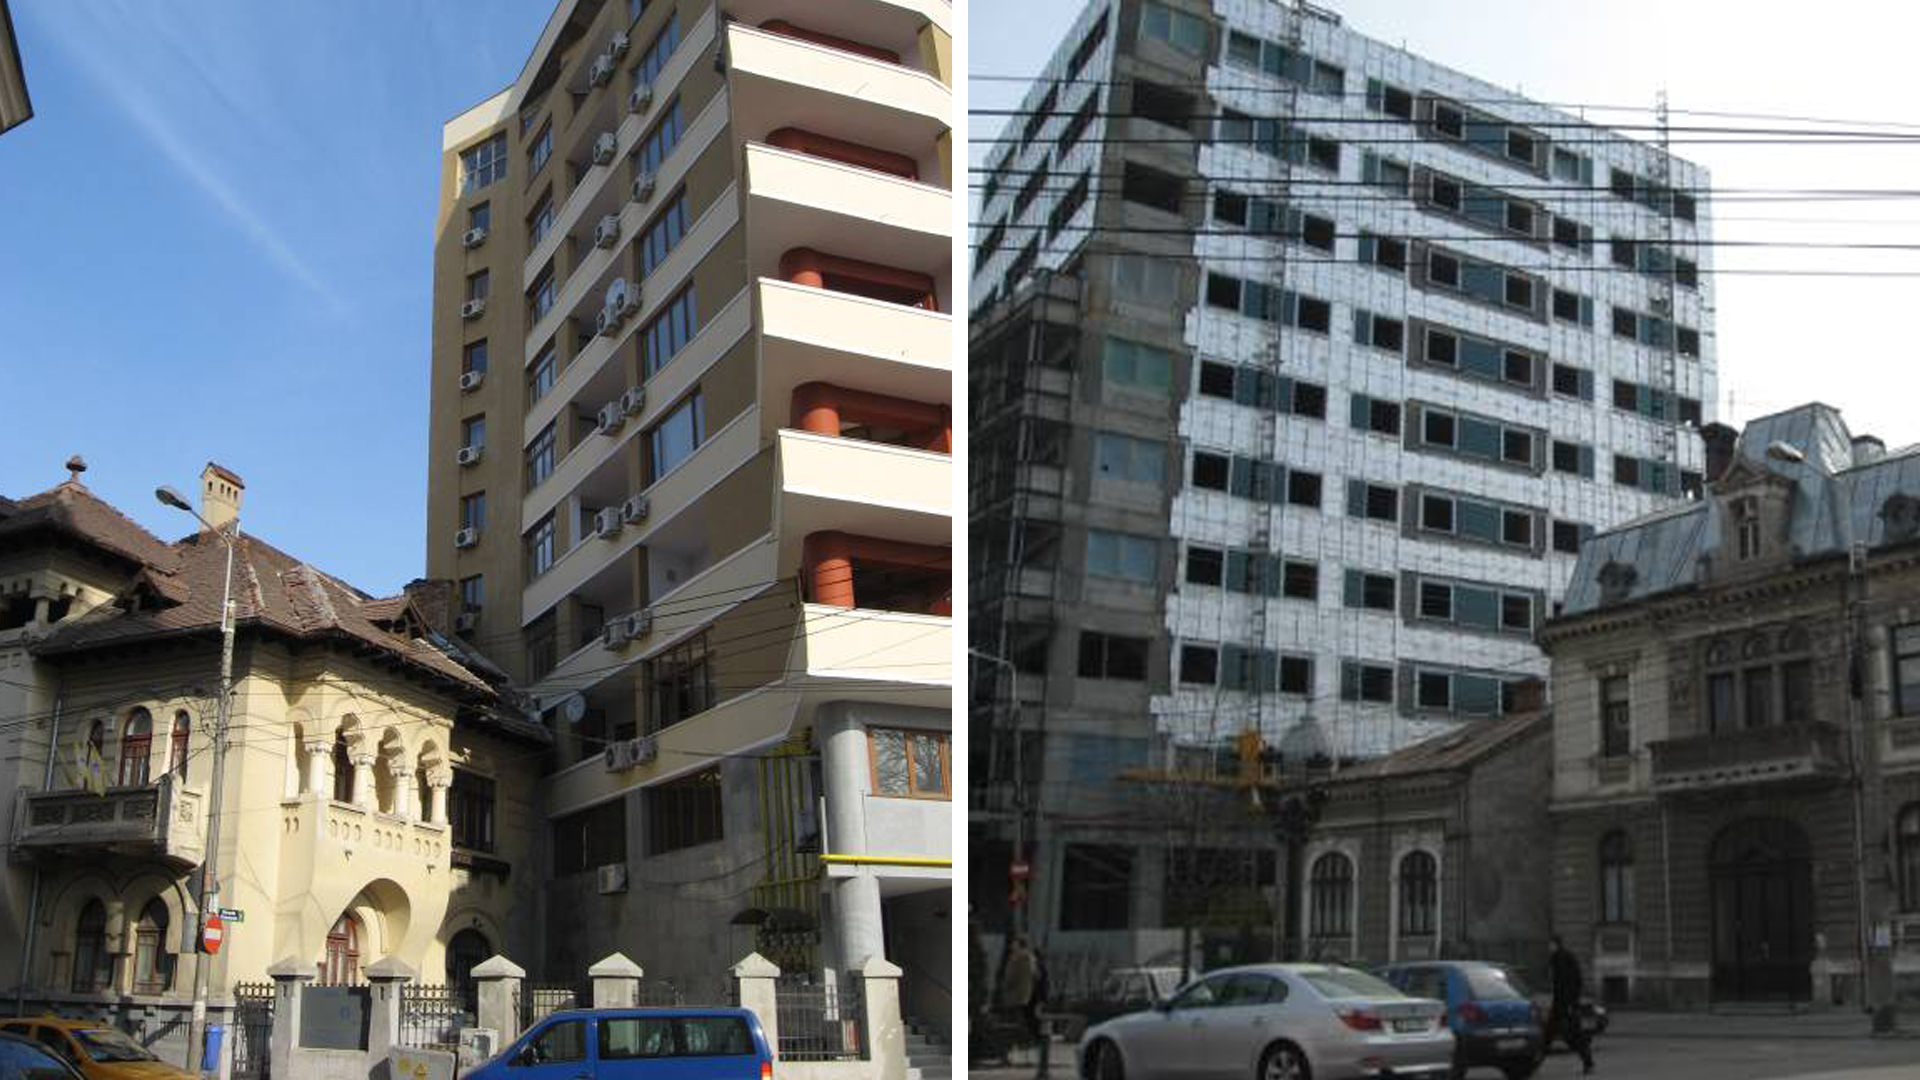 Raport Bucureștiul se dezvoltă haotic, iar ediliilor nu le pasă de pārerea locuitorilor